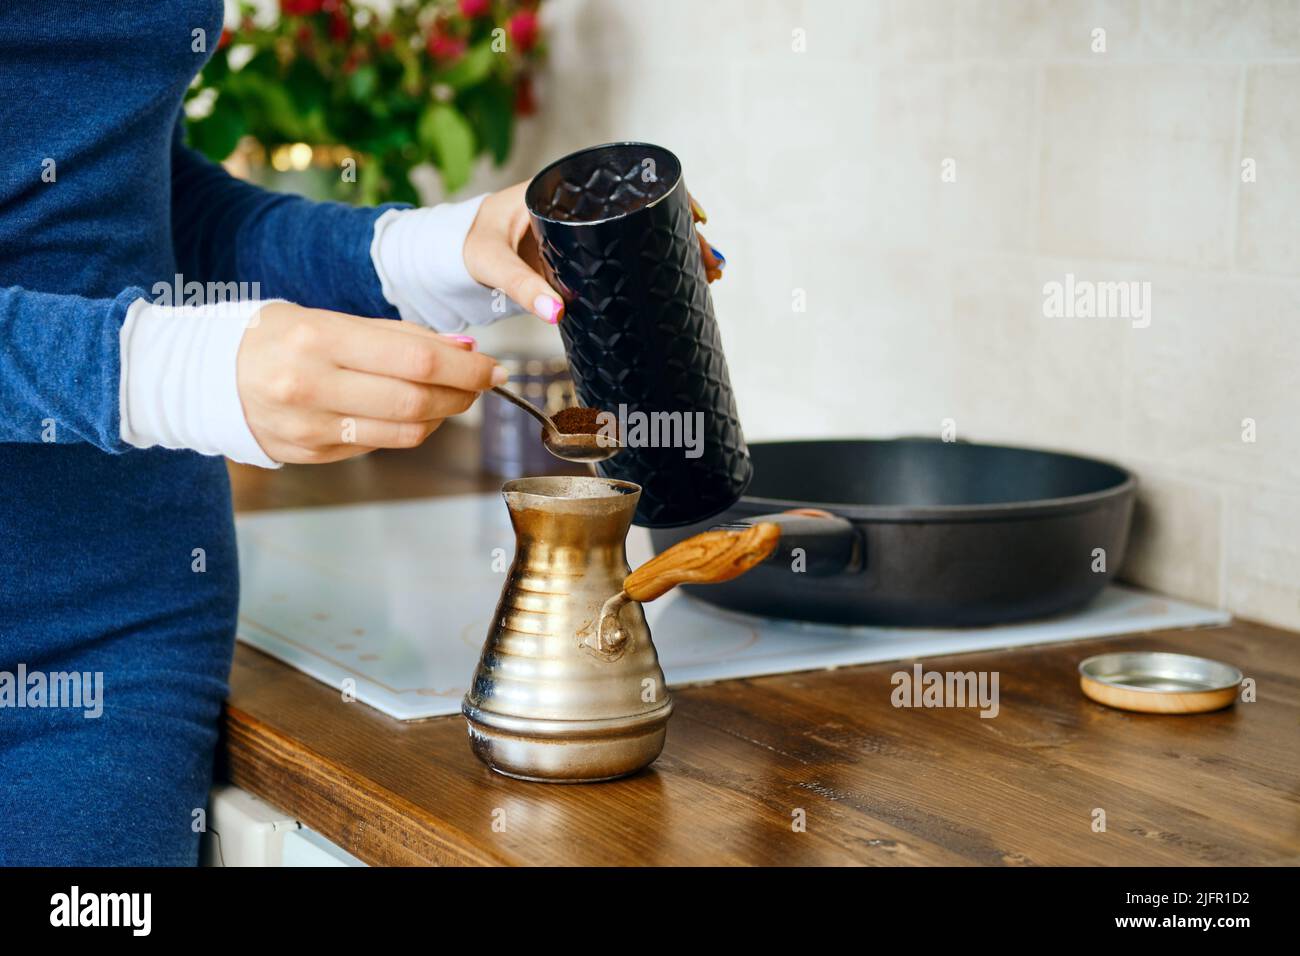 https://c8.alamy.com/compes/2jfr1d2/primer-plano-de-la-mano-femenina-con-cuchara-con-cafe-molido-cerca-de-un-turco-preparar-cafe-en-una-olla-de-metal-2jfr1d2.jpg